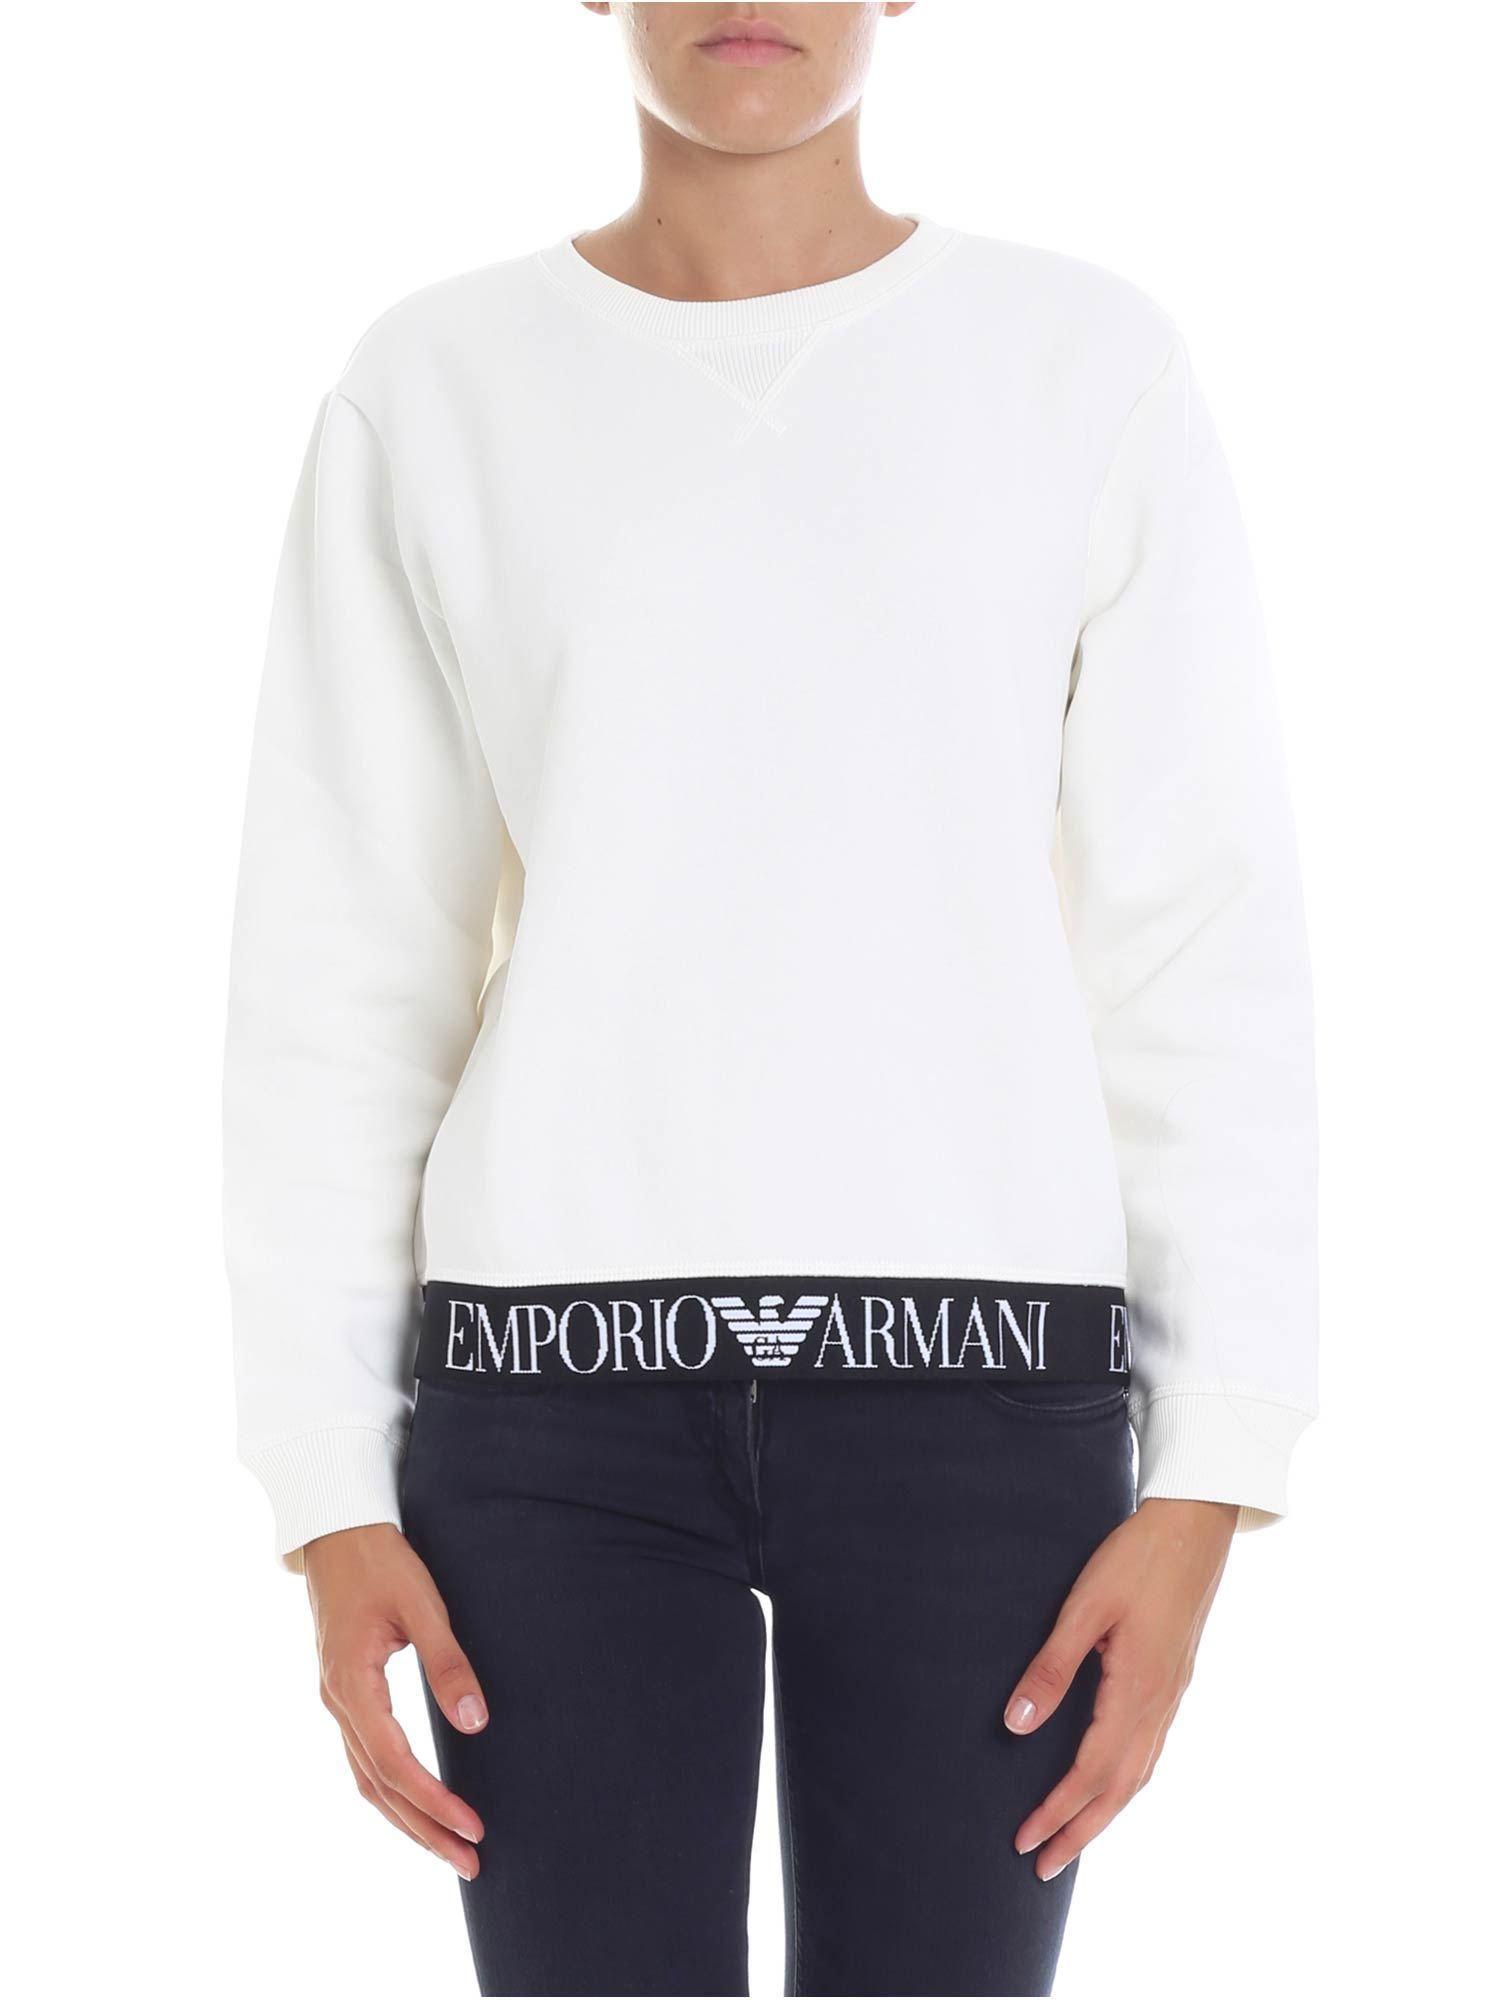 Cream Colored Logo - Emporio Armani Cream Colored Sweatshirt With Logo in White